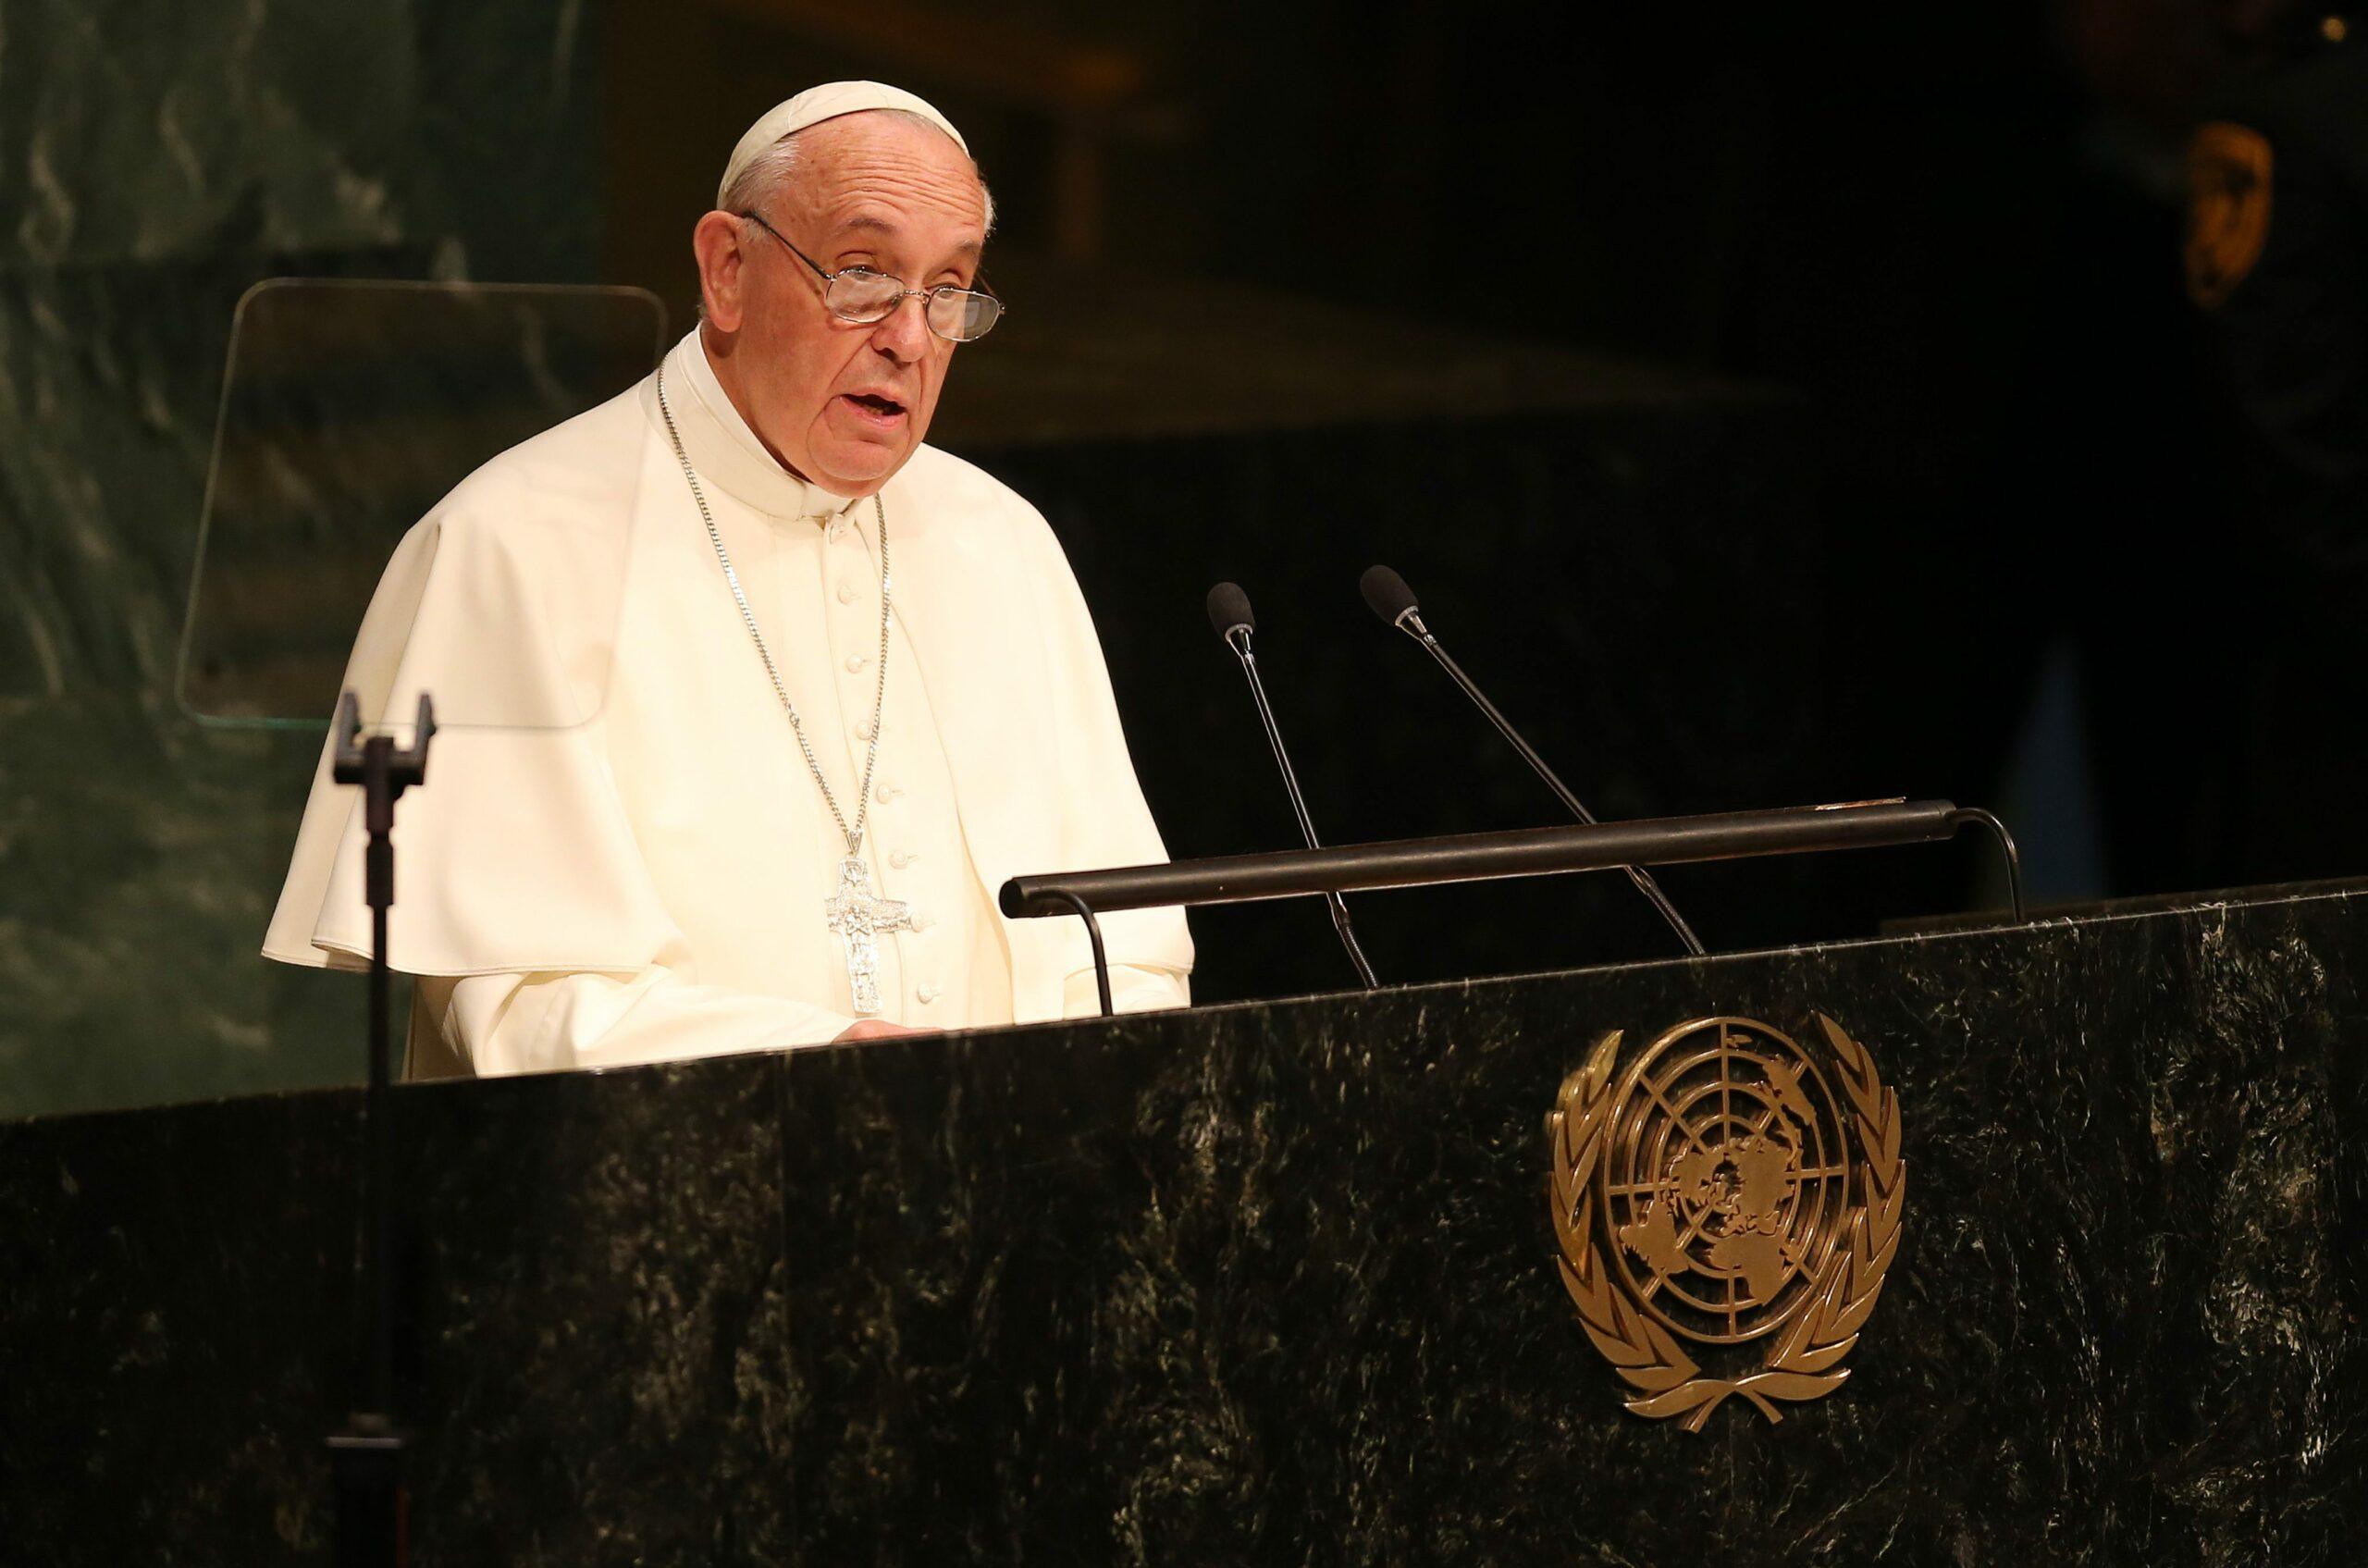 União homossexual legalizada é defendida pelo Papa Francisco em filme